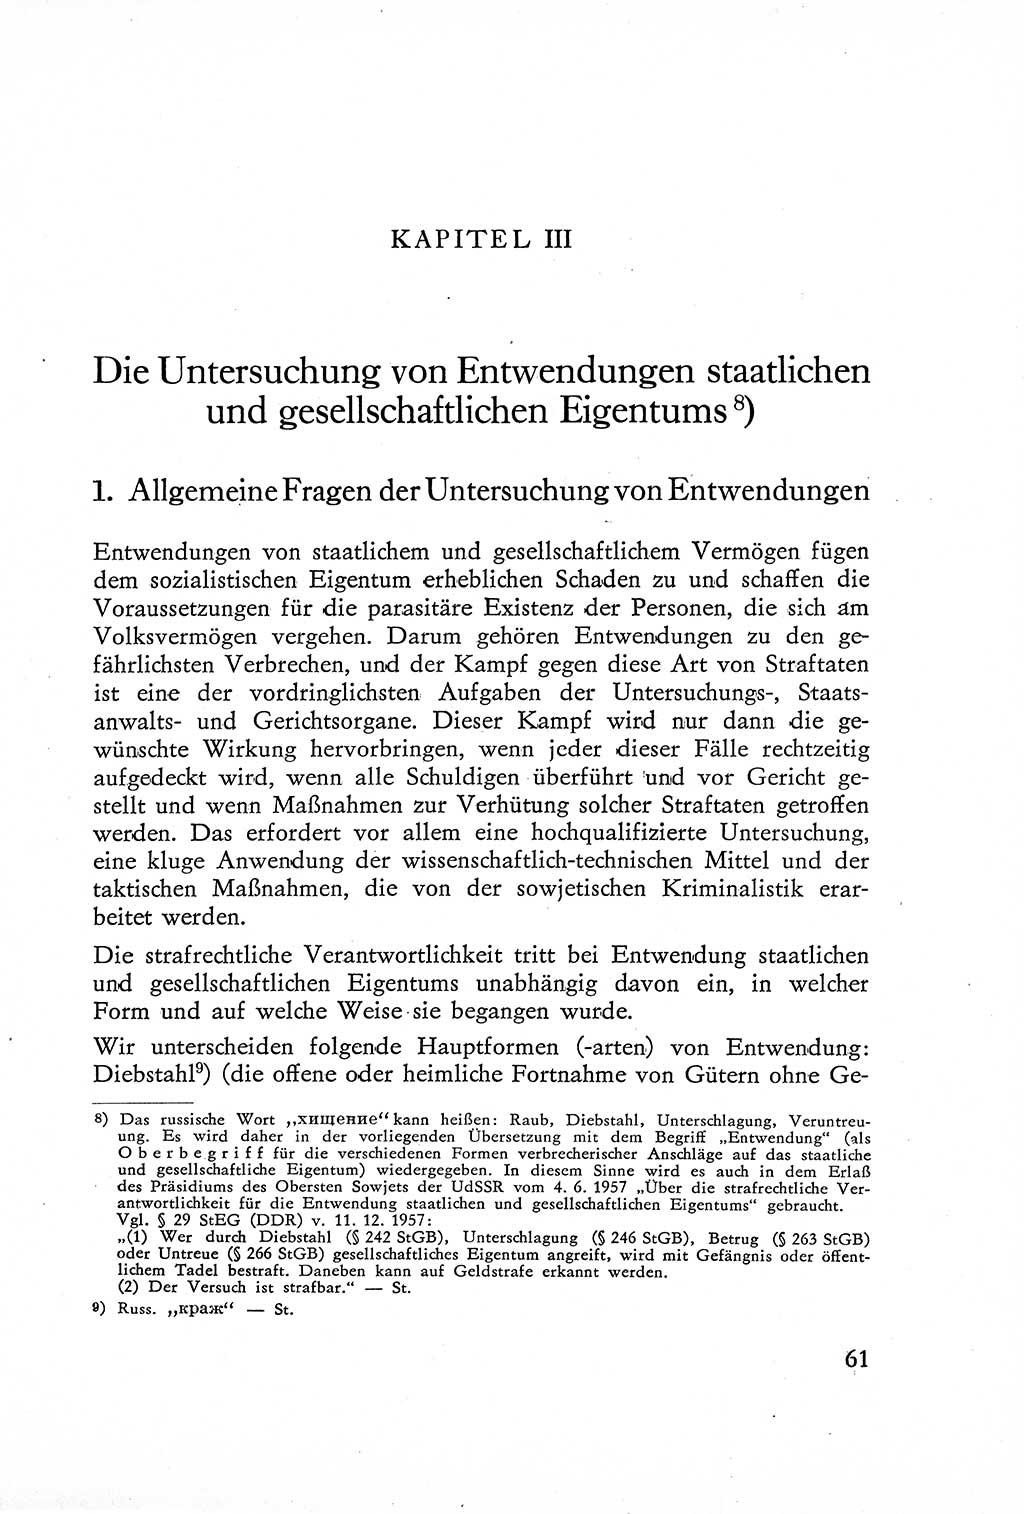 Die Untersuchung einzelner Verbrechensarten [Deutsche Demokratische Republik (DDR)] 1960, Seite 61 (Unters. Verbr.-Art. DDR 1960, S. 61)